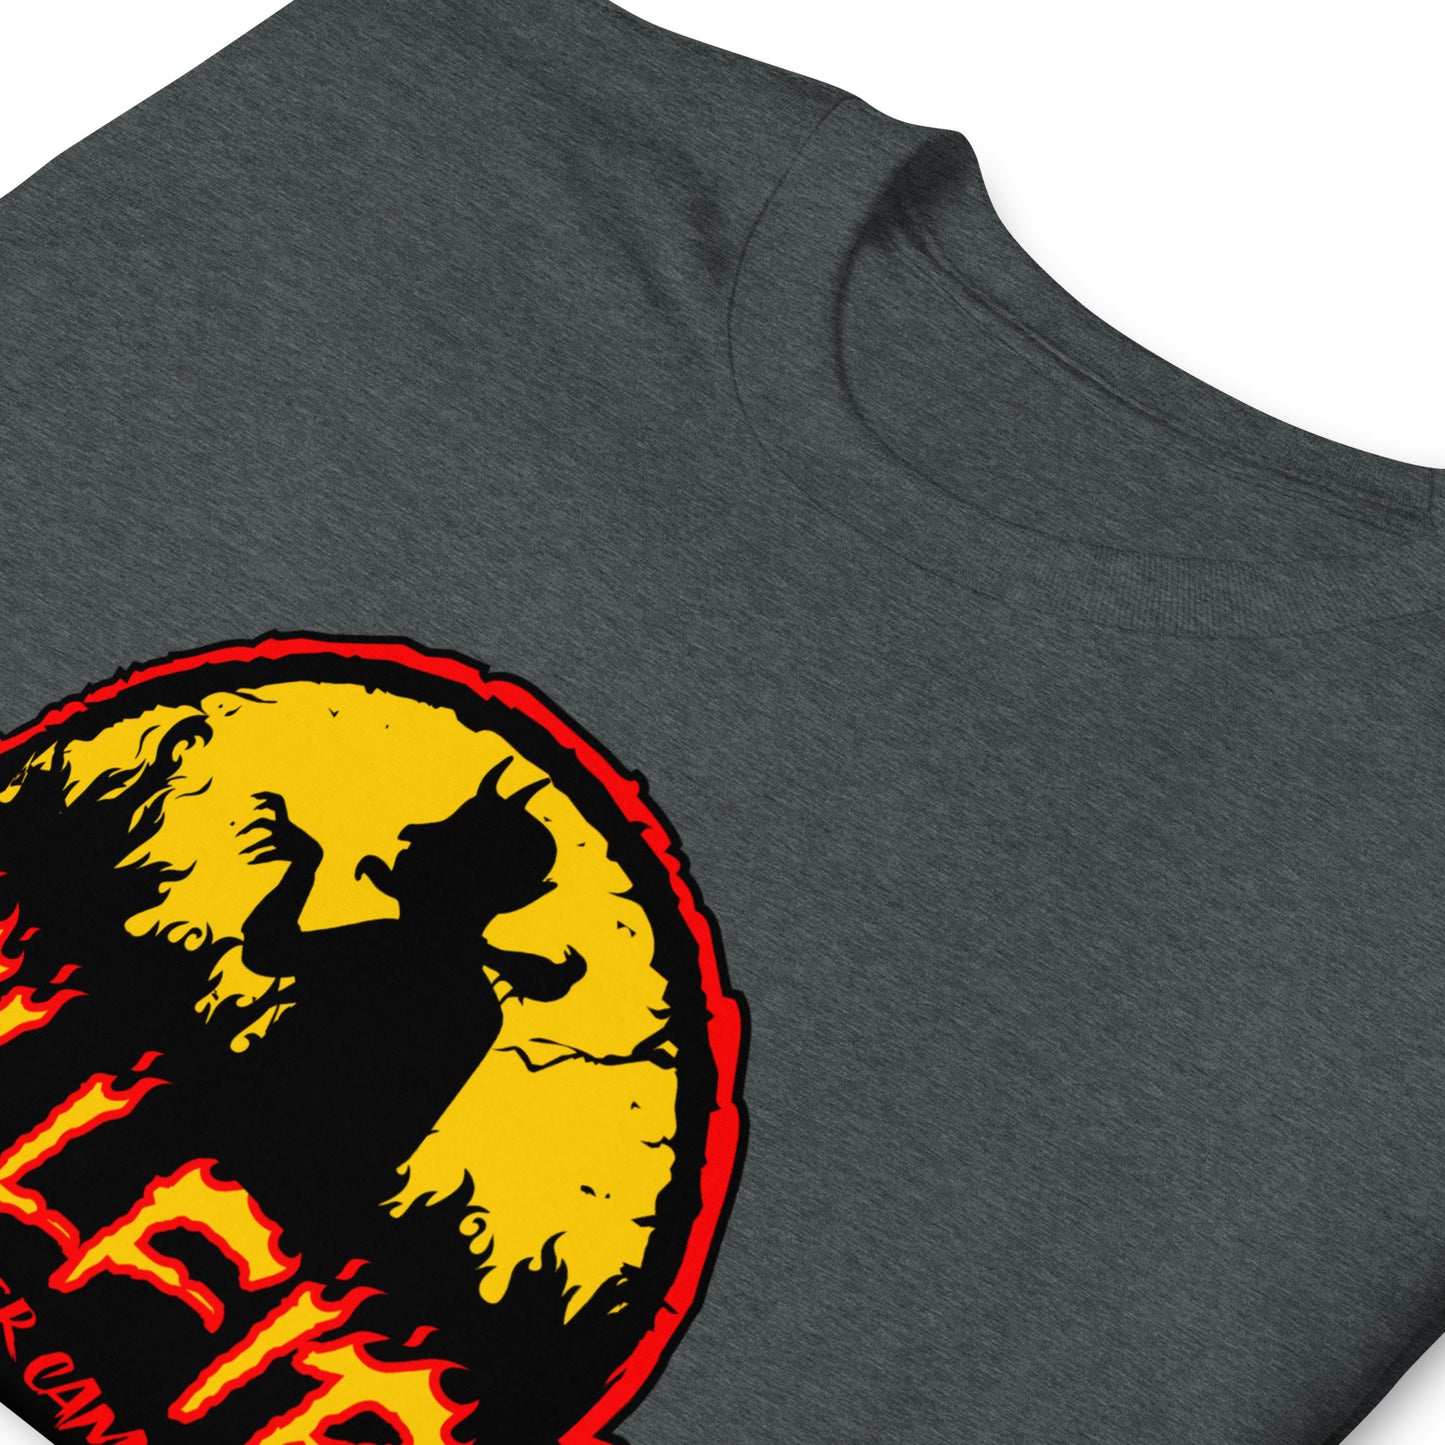 Hellfire Summer Camp Halloween Unisex T-Shirt